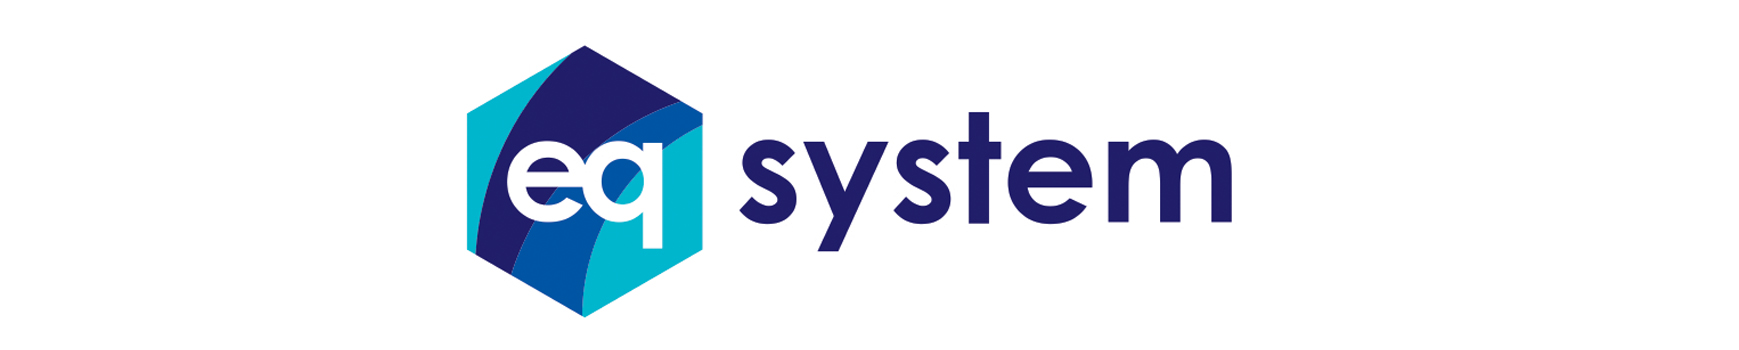 eq system logo